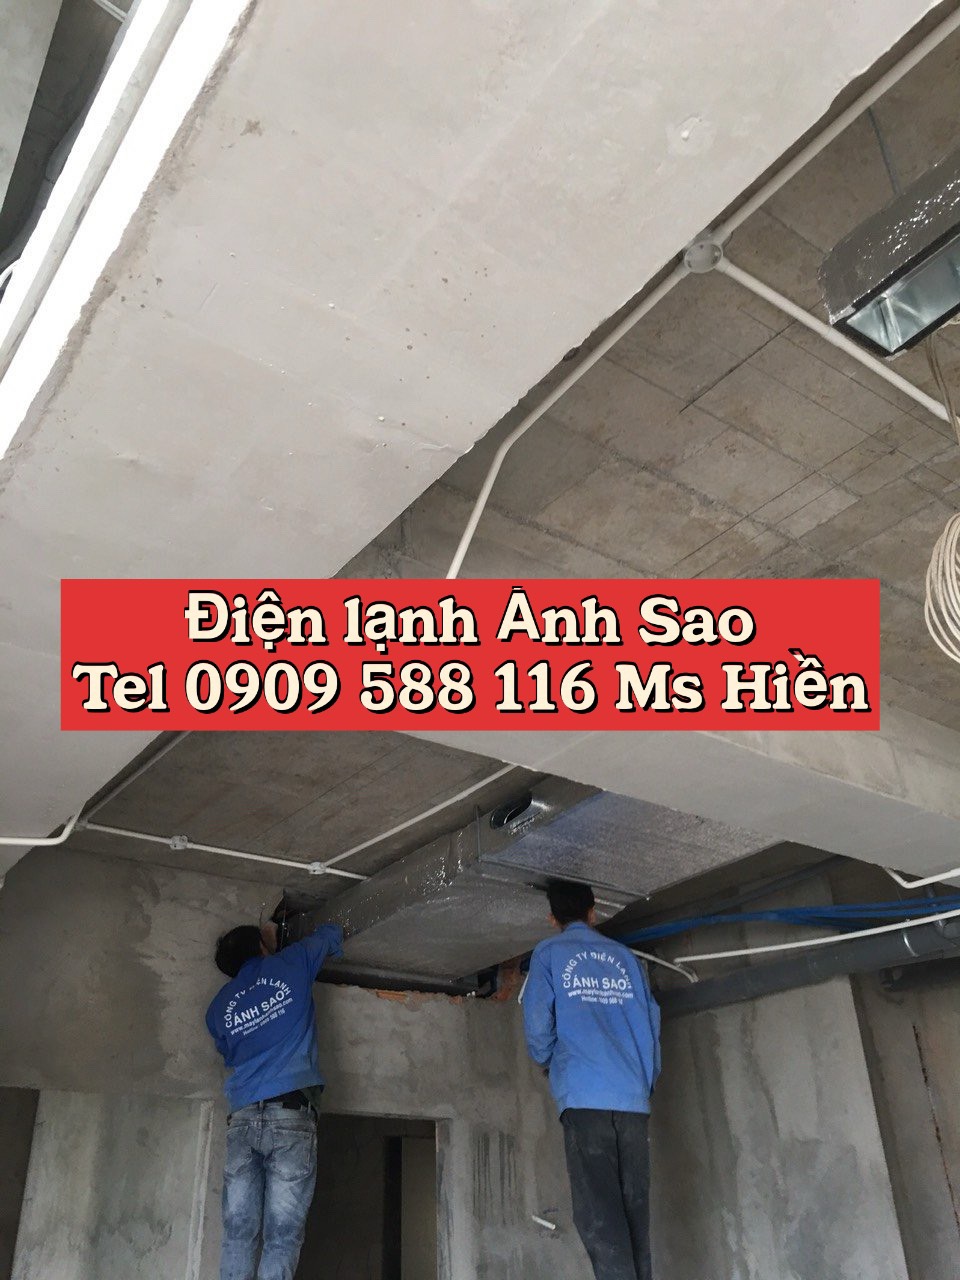 Lắp đặt máy lạnh tại Long Khánh Uy tín giá tốt LH 0909 588 116